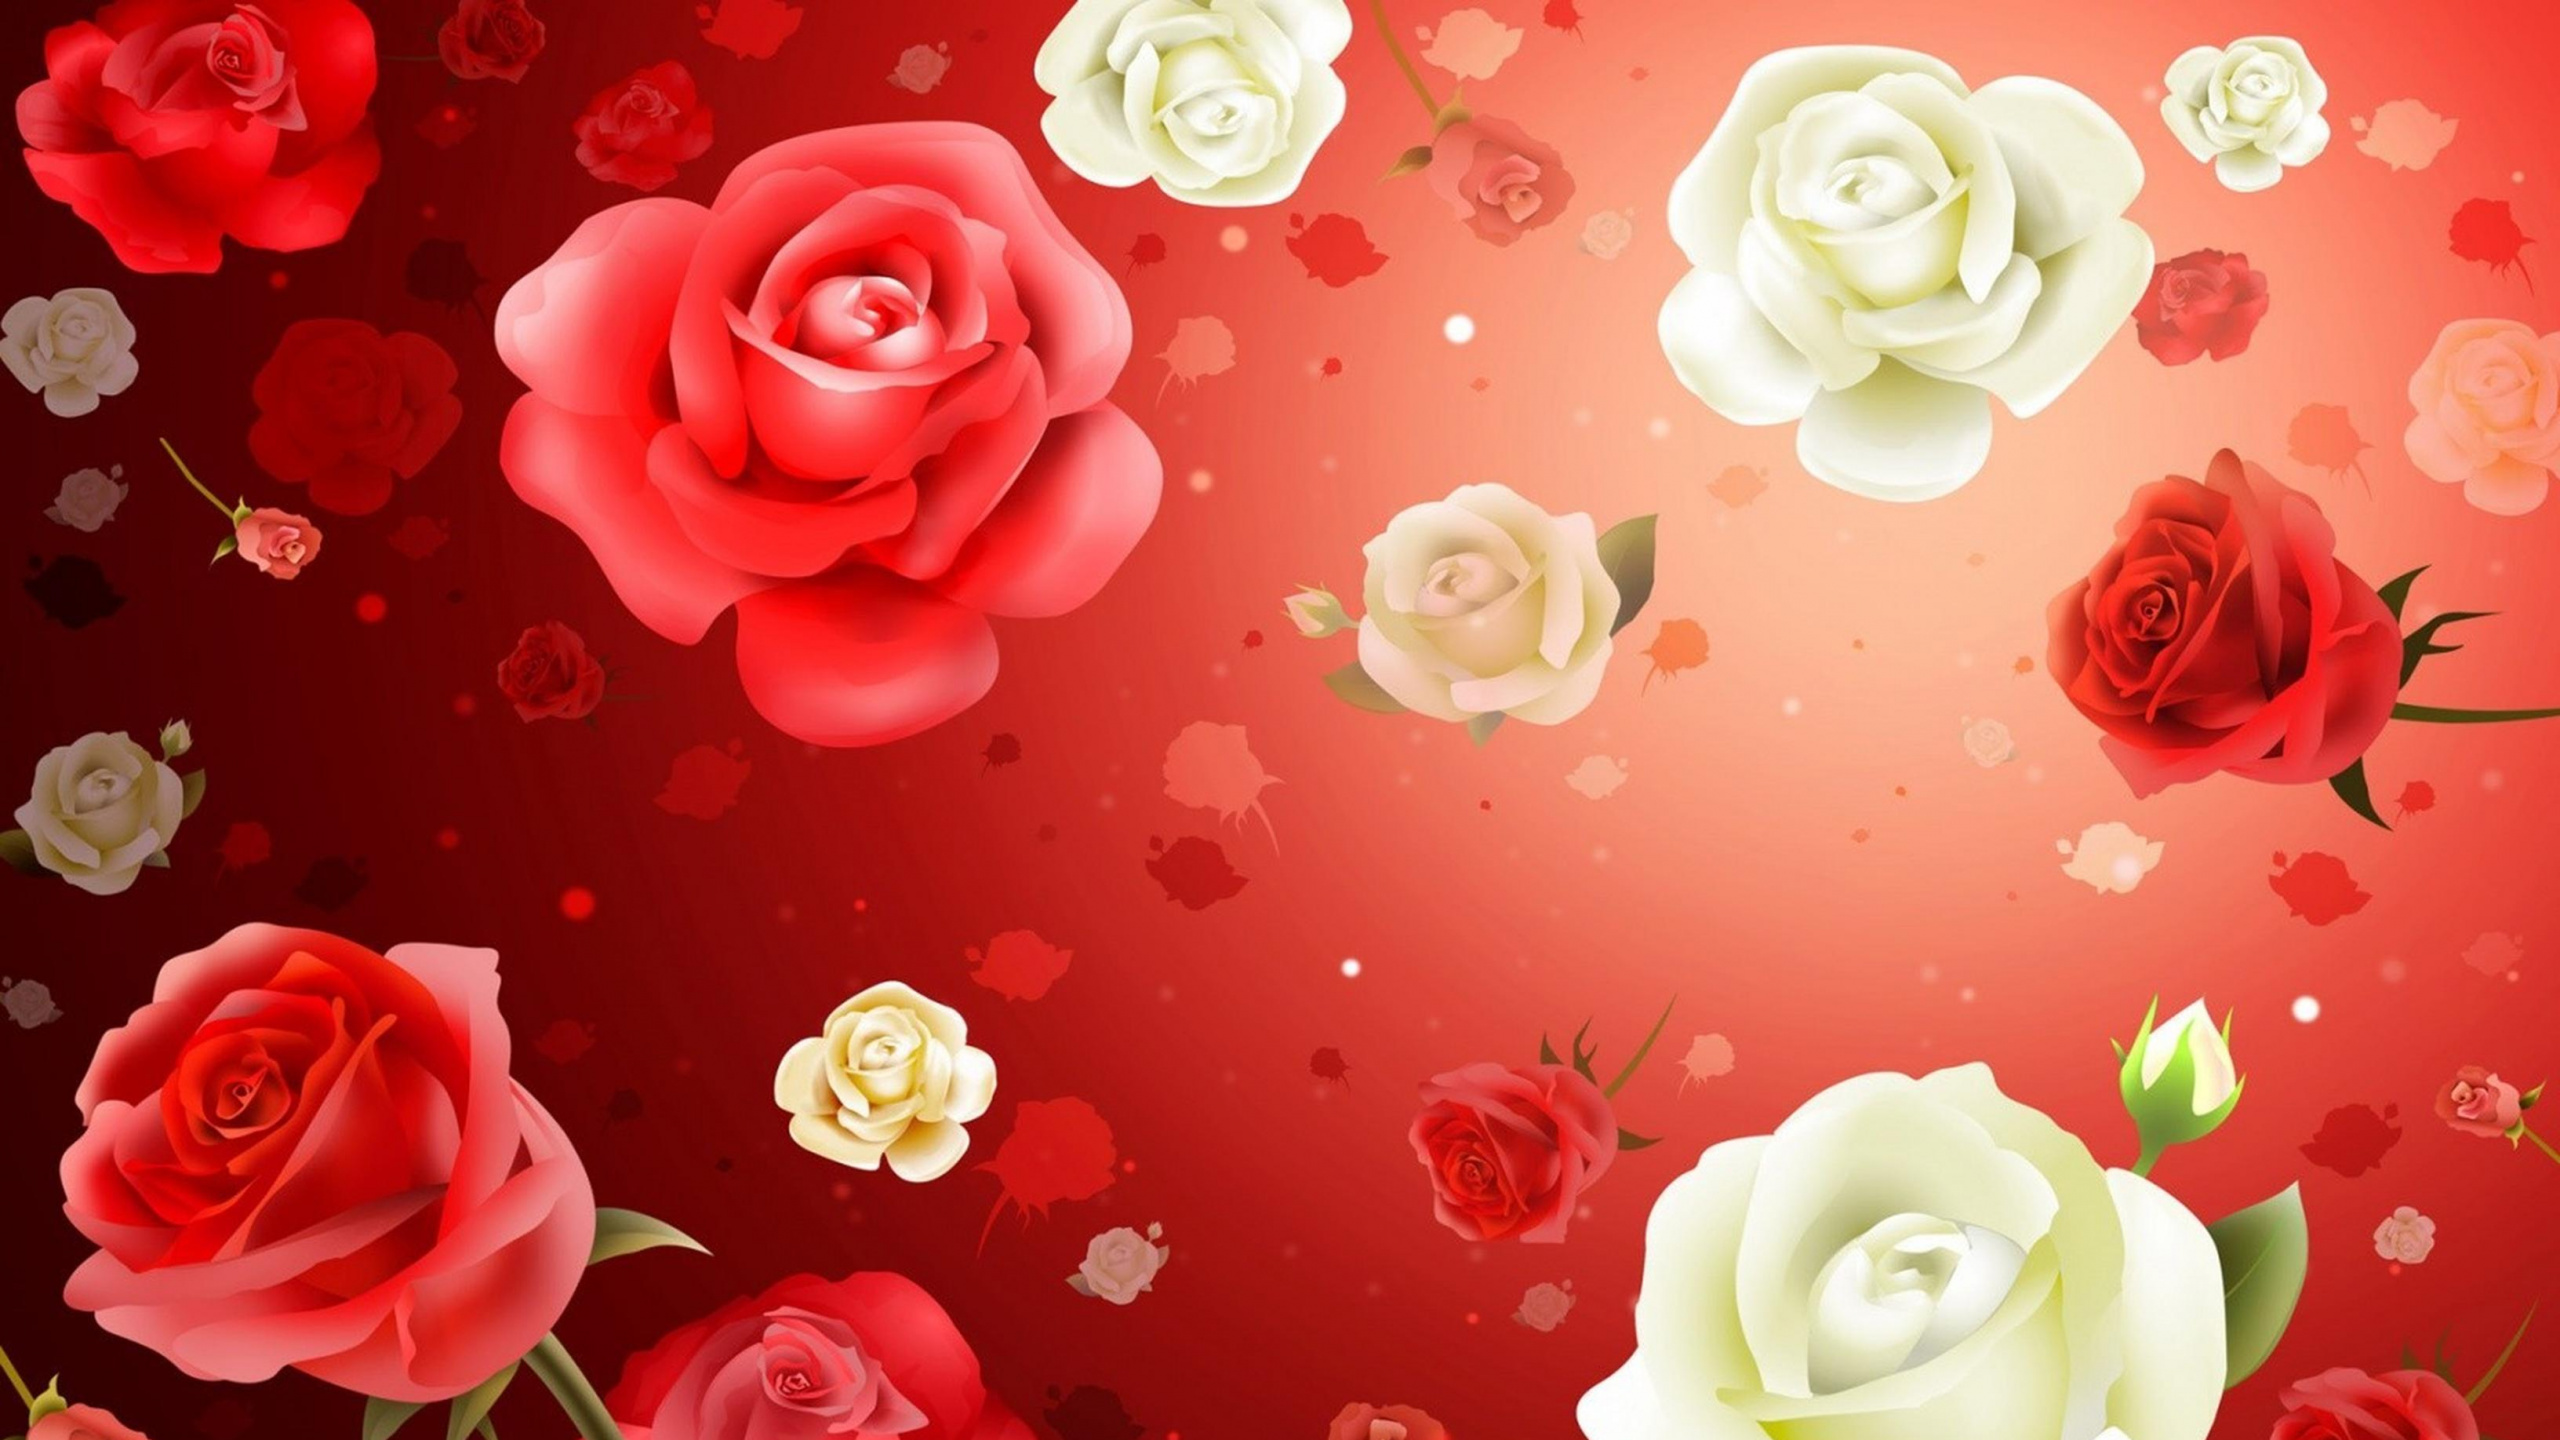 红色的, 玫瑰花园, 粉红色, 玫瑰家庭, 菌群 壁纸 2560x1440 允许